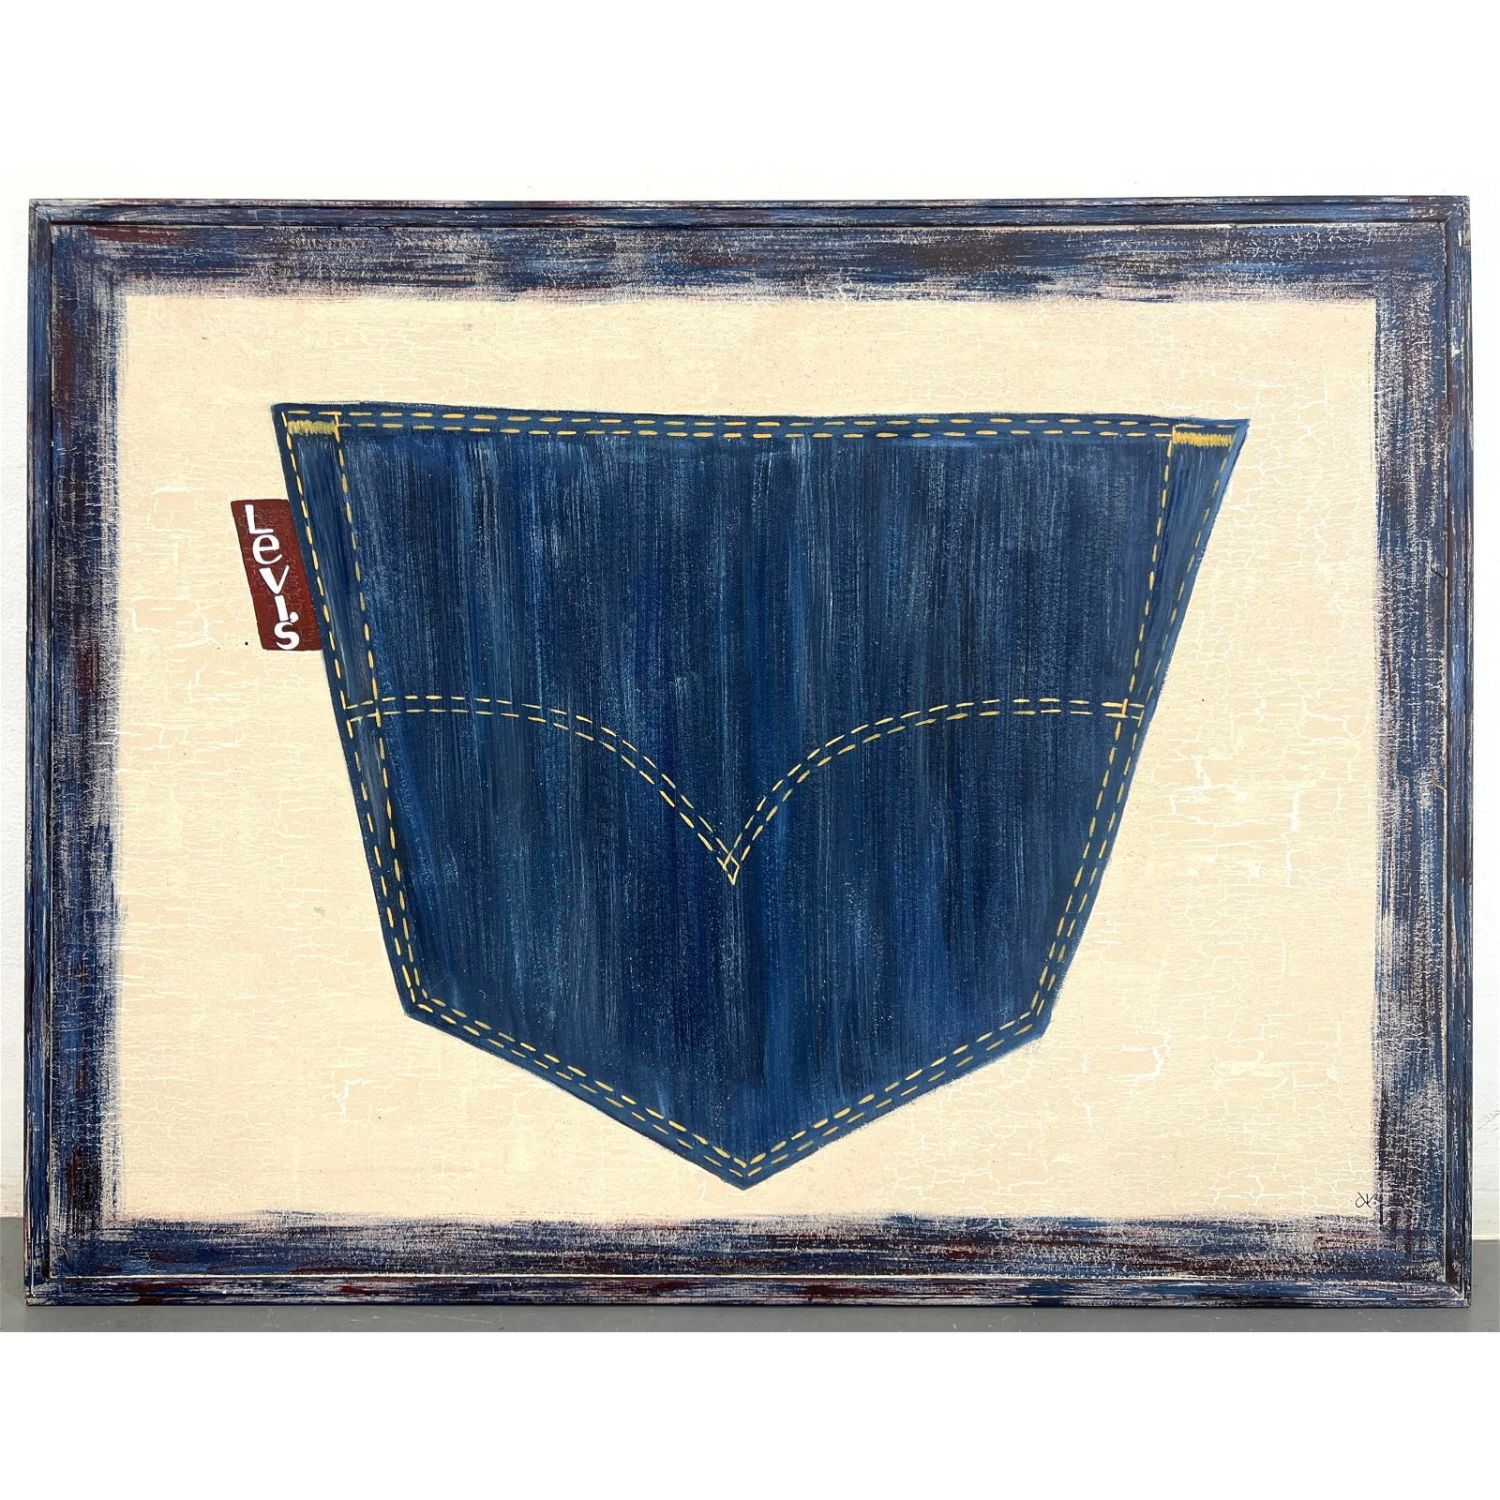 Vintage Levi s Jeans Acrylic Painting 362d3c